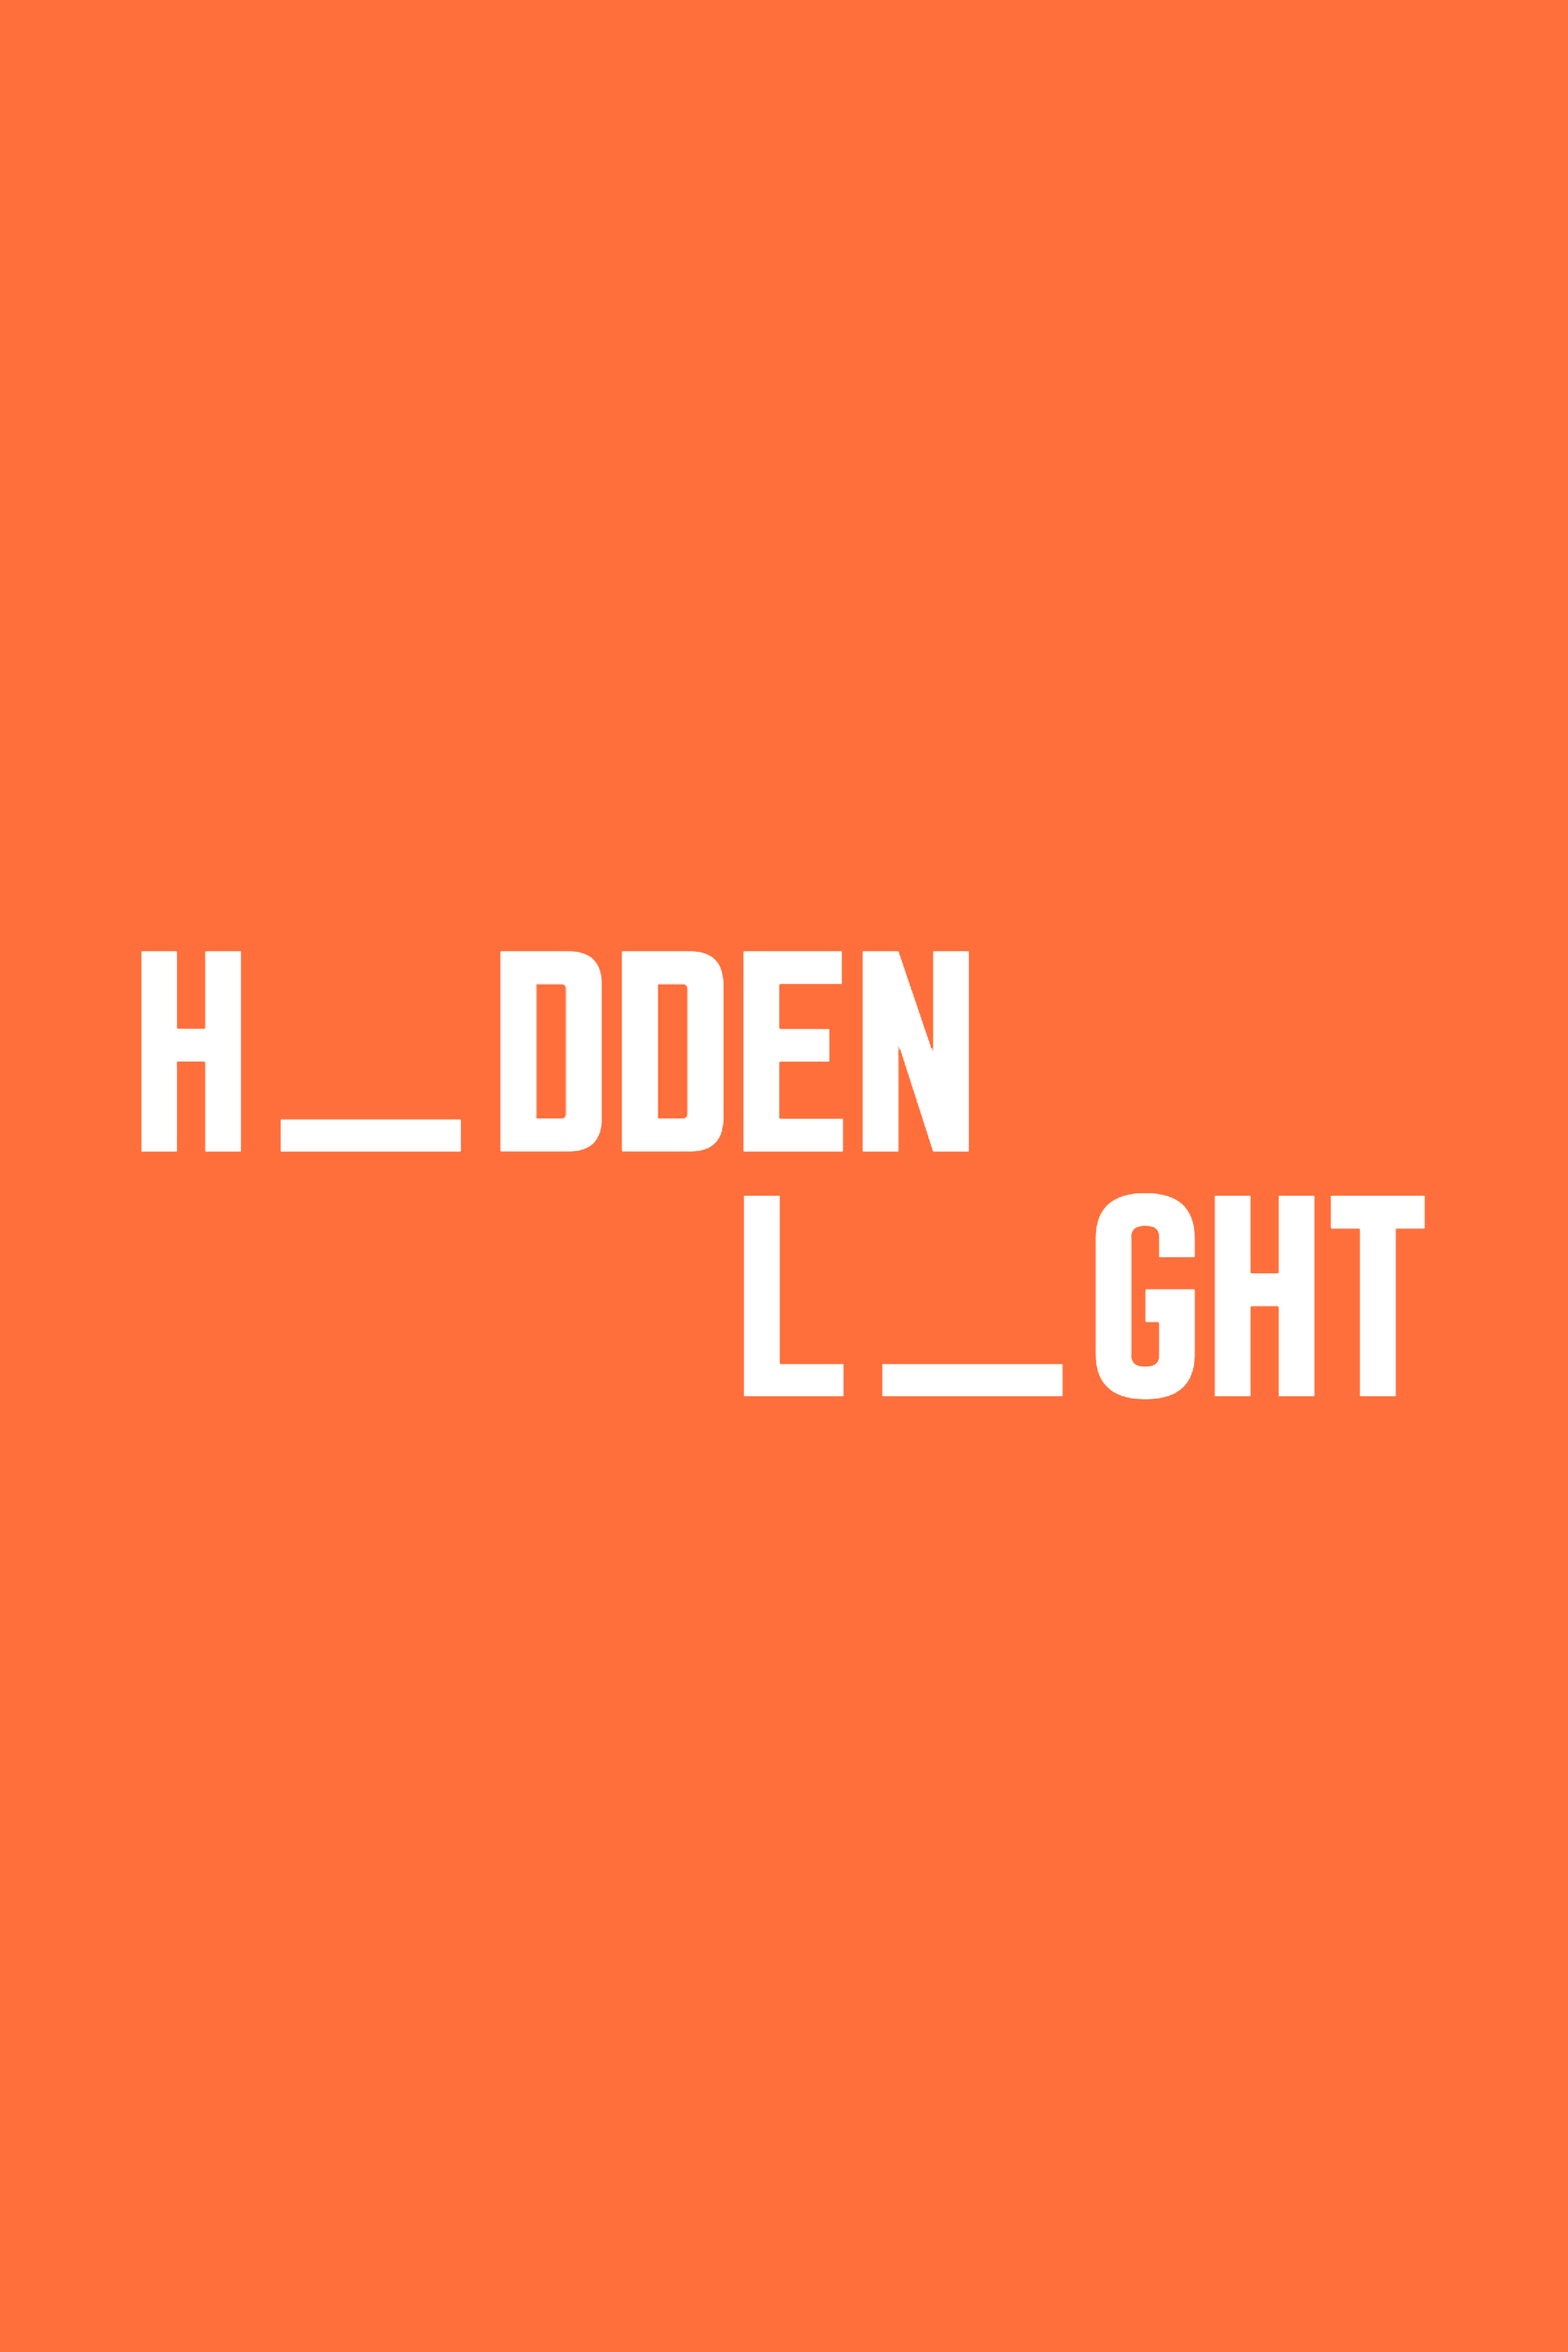 hiddenlight productions logo